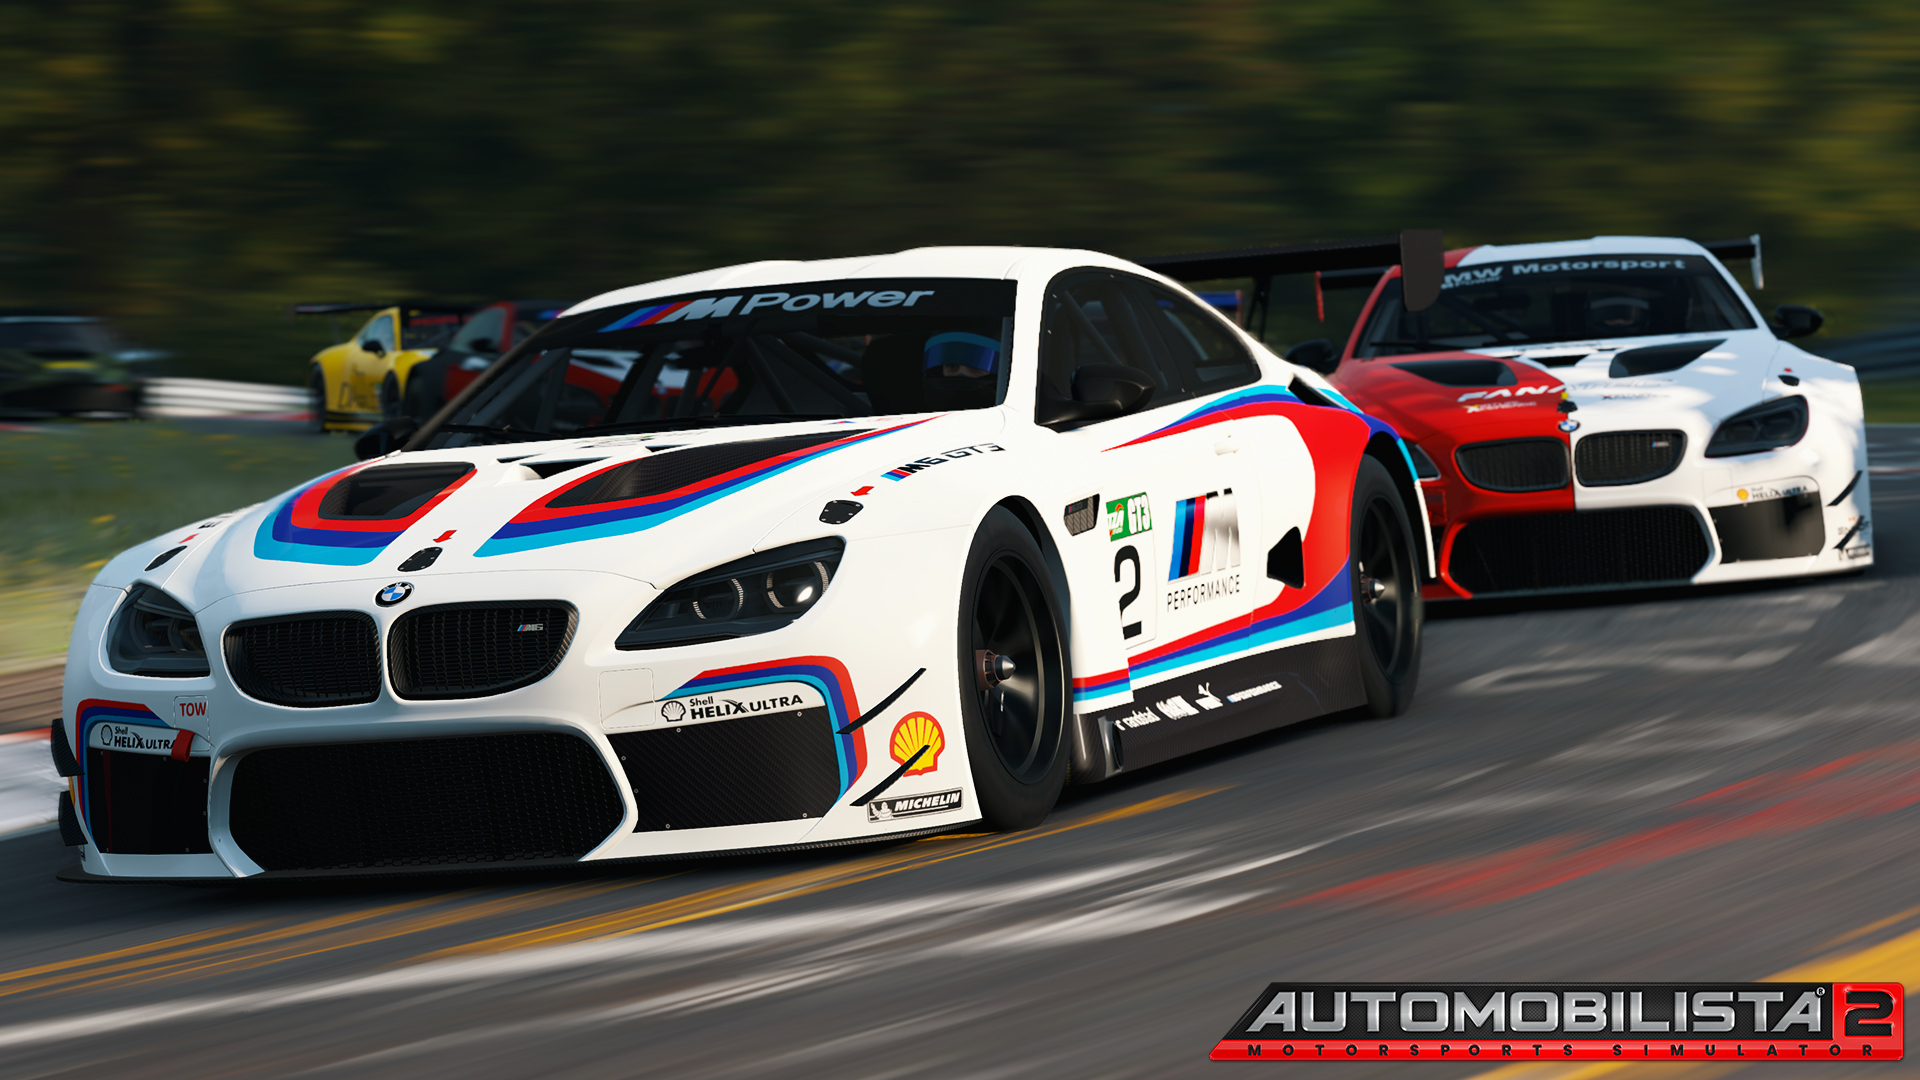 More information about "Automobilista 2 aggiornato, c'è anche la BMW M6 GT3"